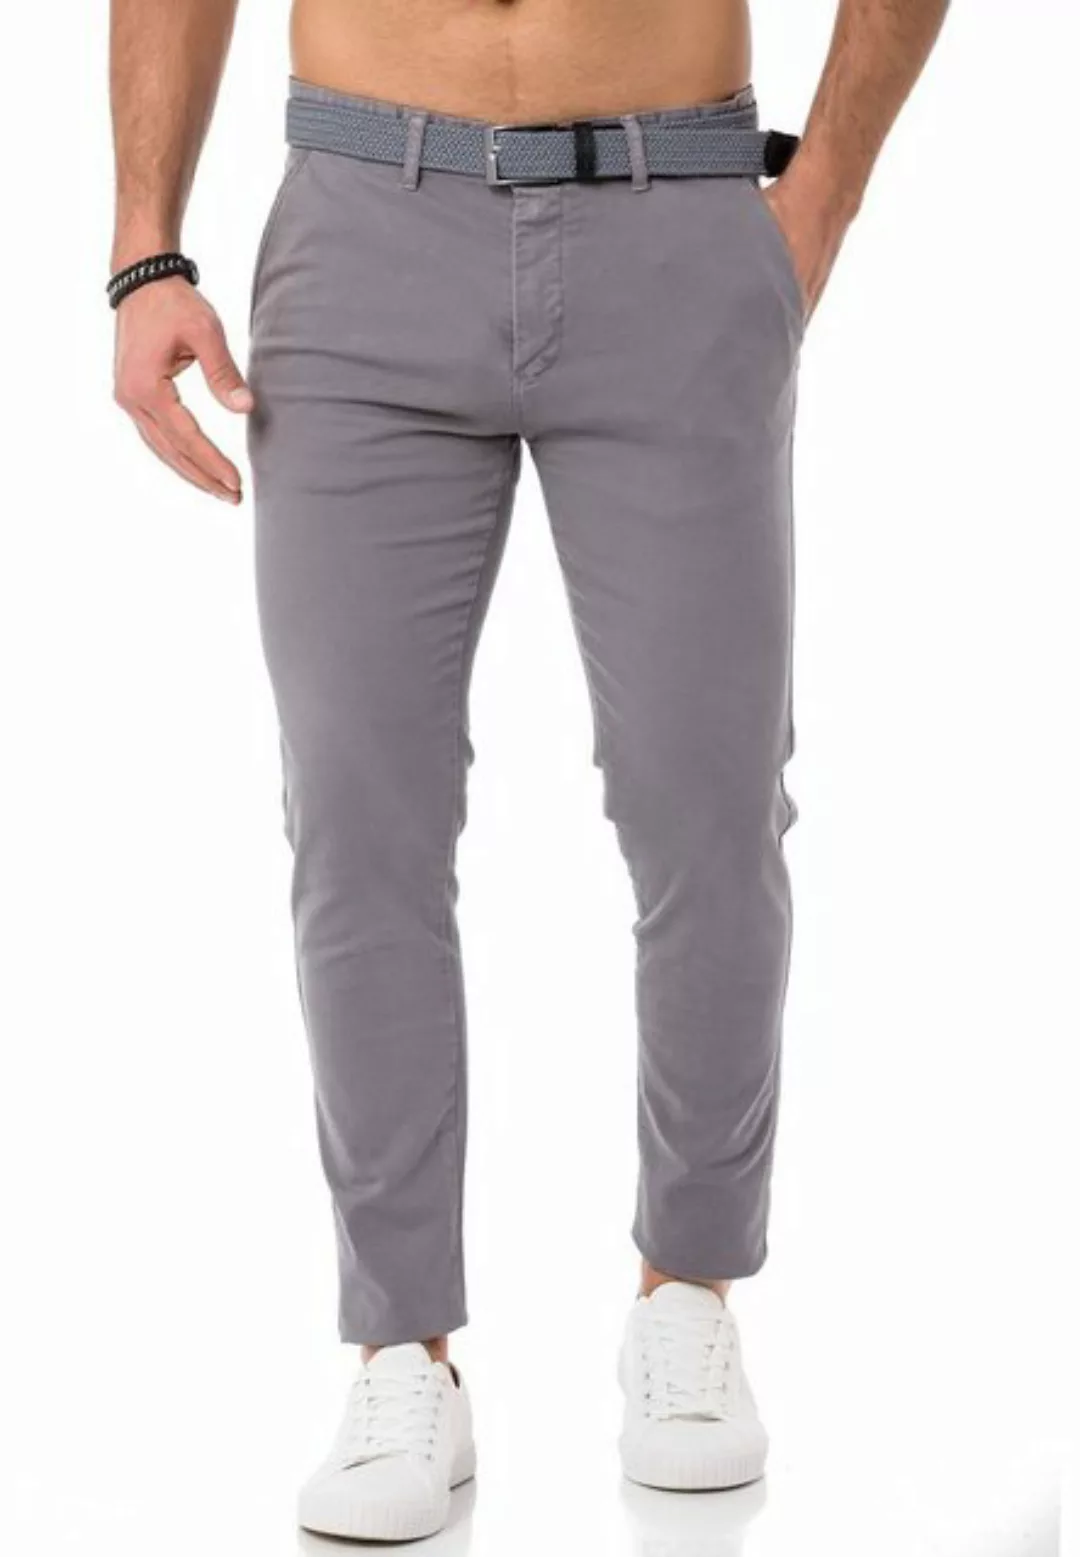 RedBridge Chinohose Chino Hose Pants mit Gürtel Navy Blau W29 L32 günstig online kaufen